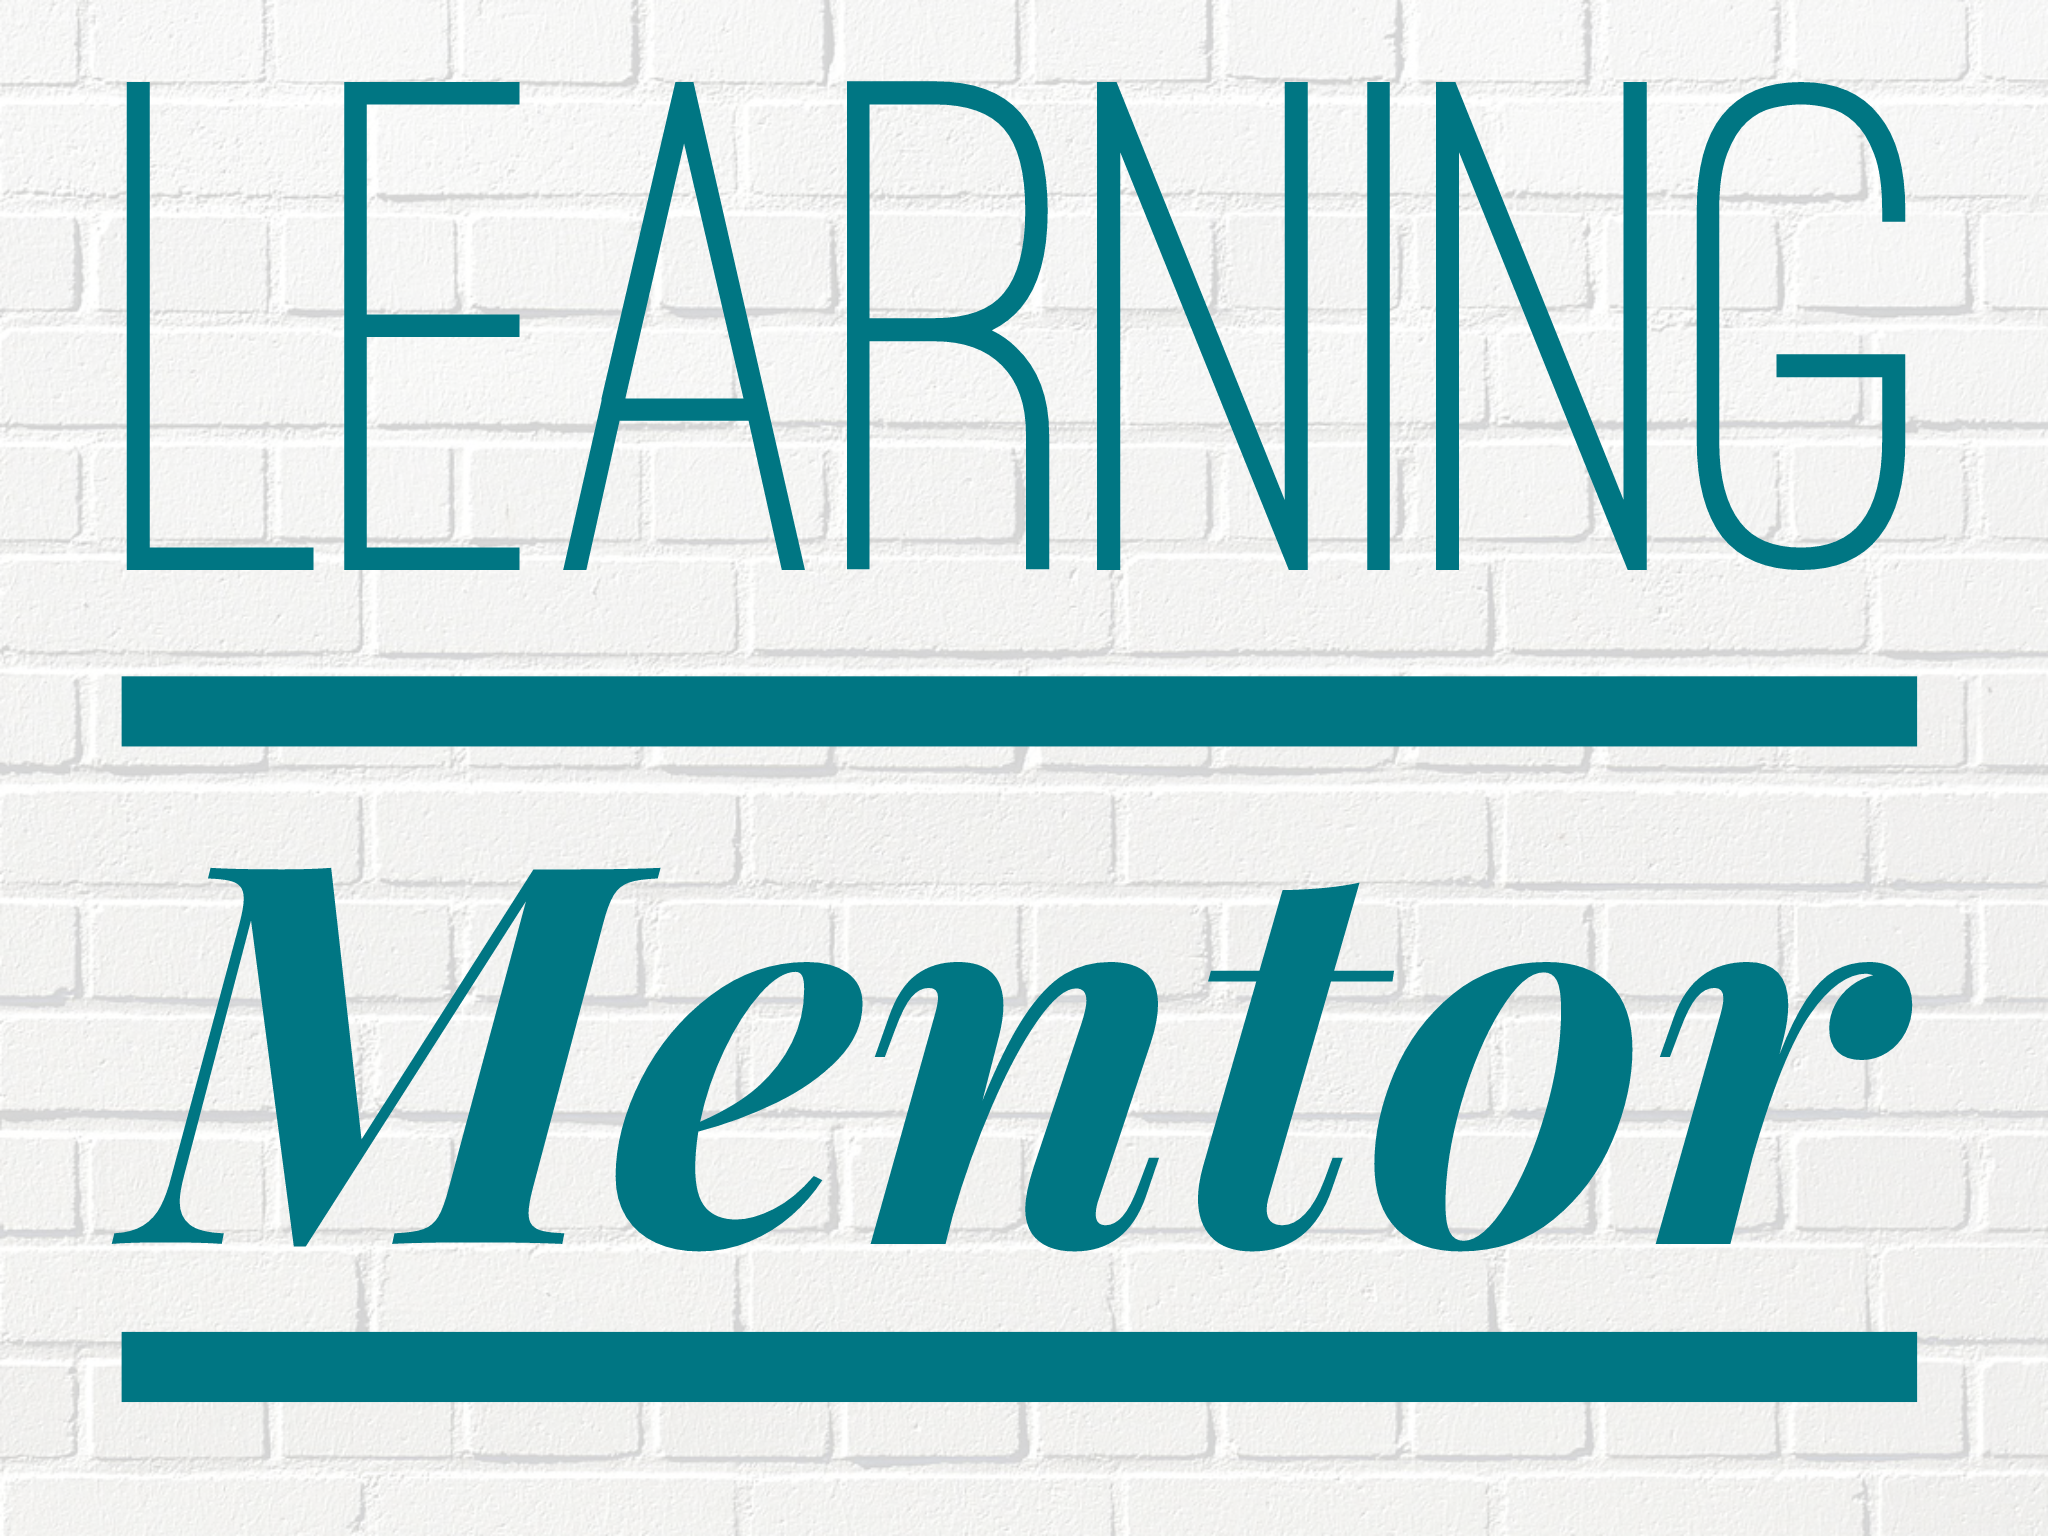 Learning Mentor